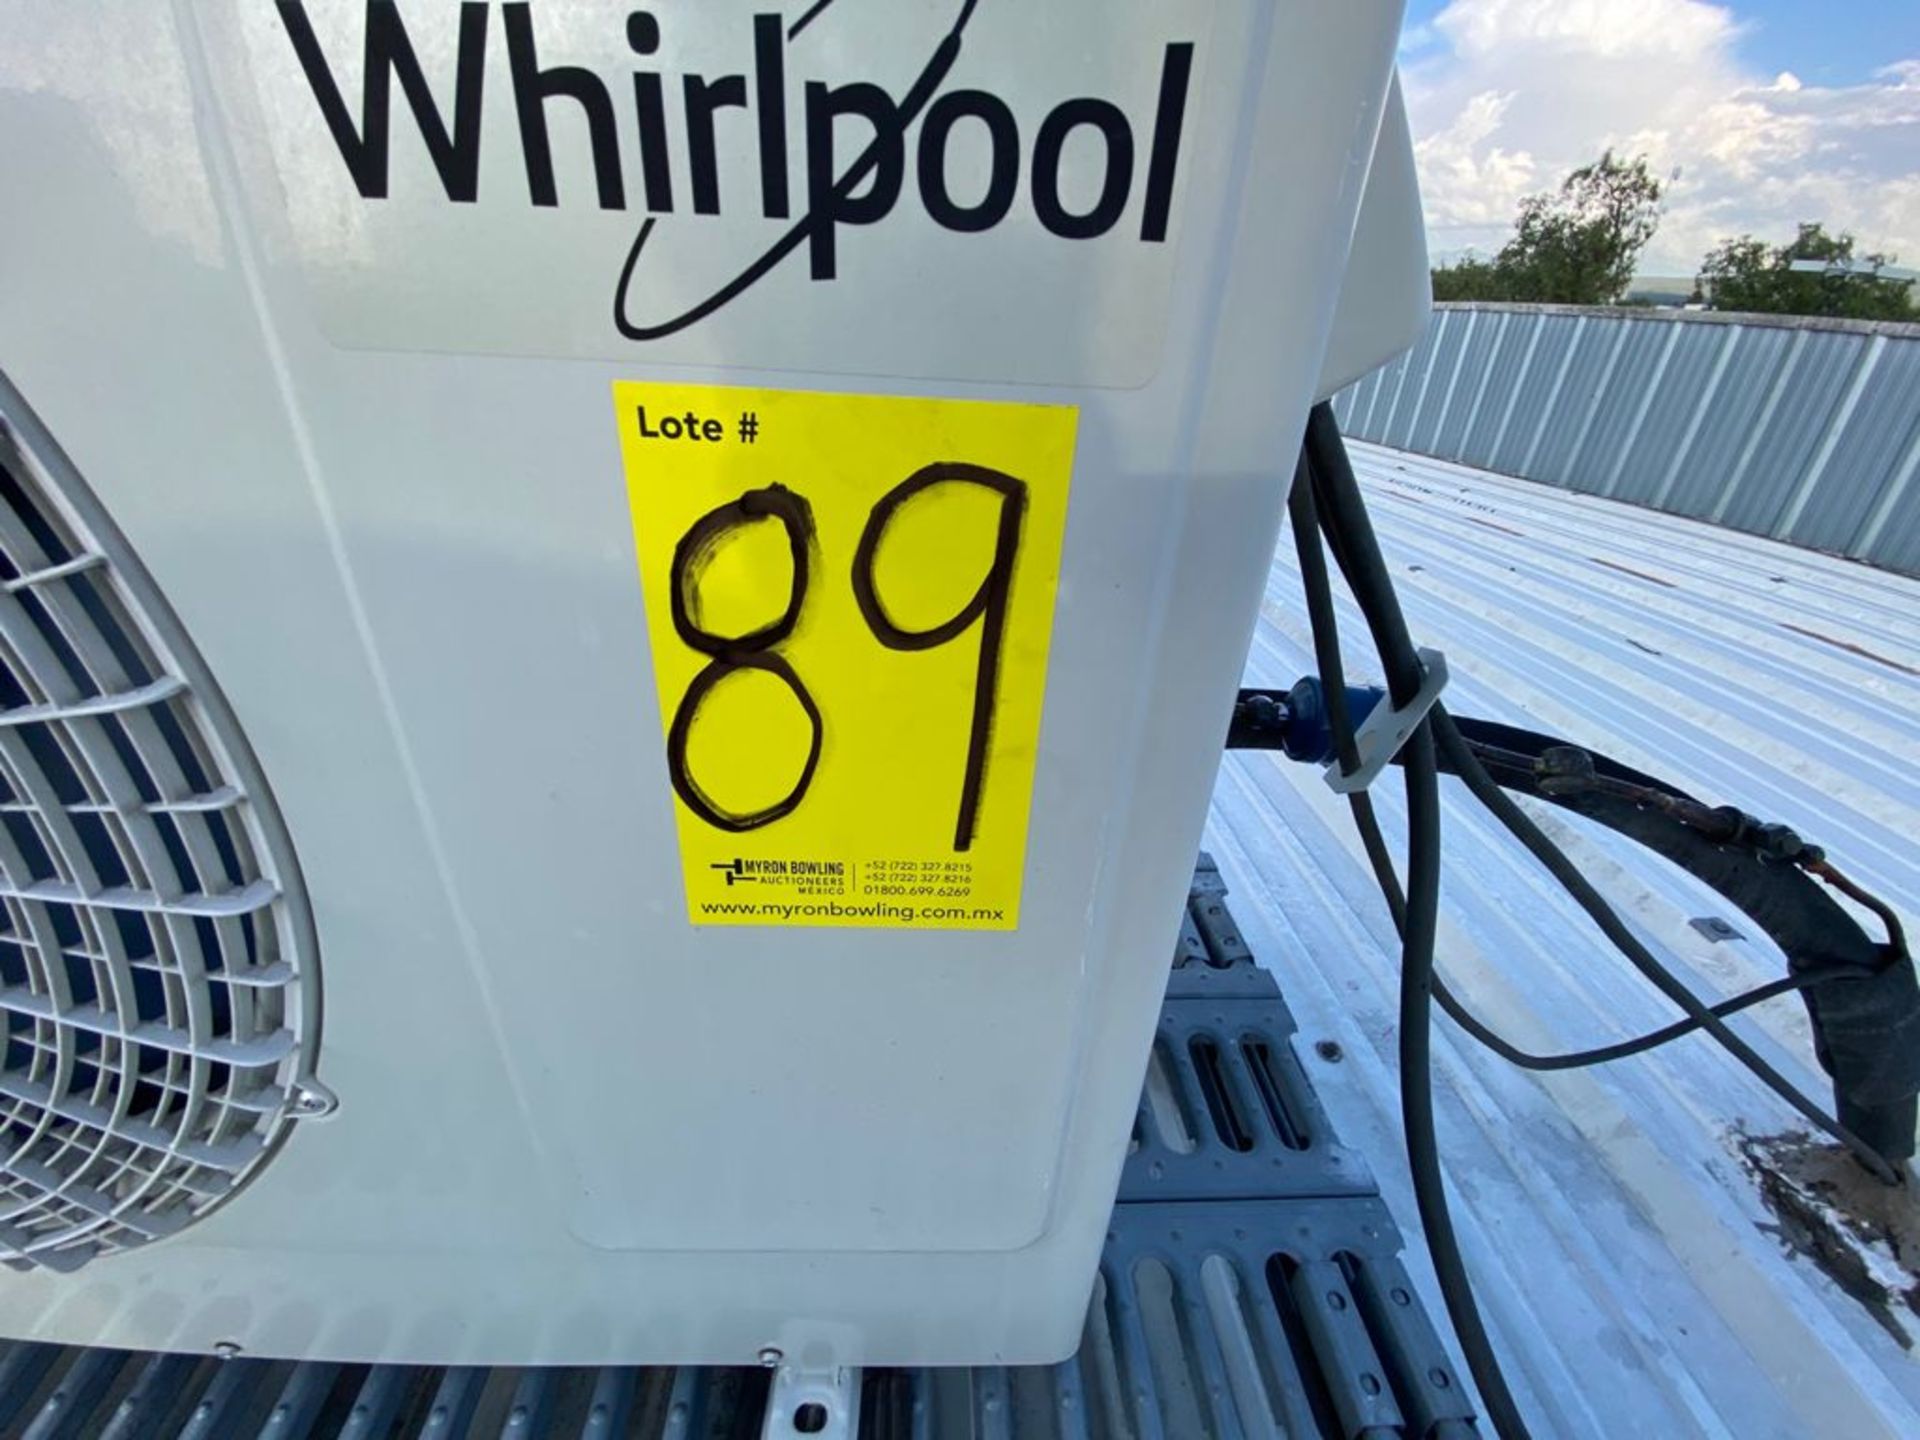 Unidad de aire acondicionado tipo mini split marca Whirlpool - Image 25 of 26